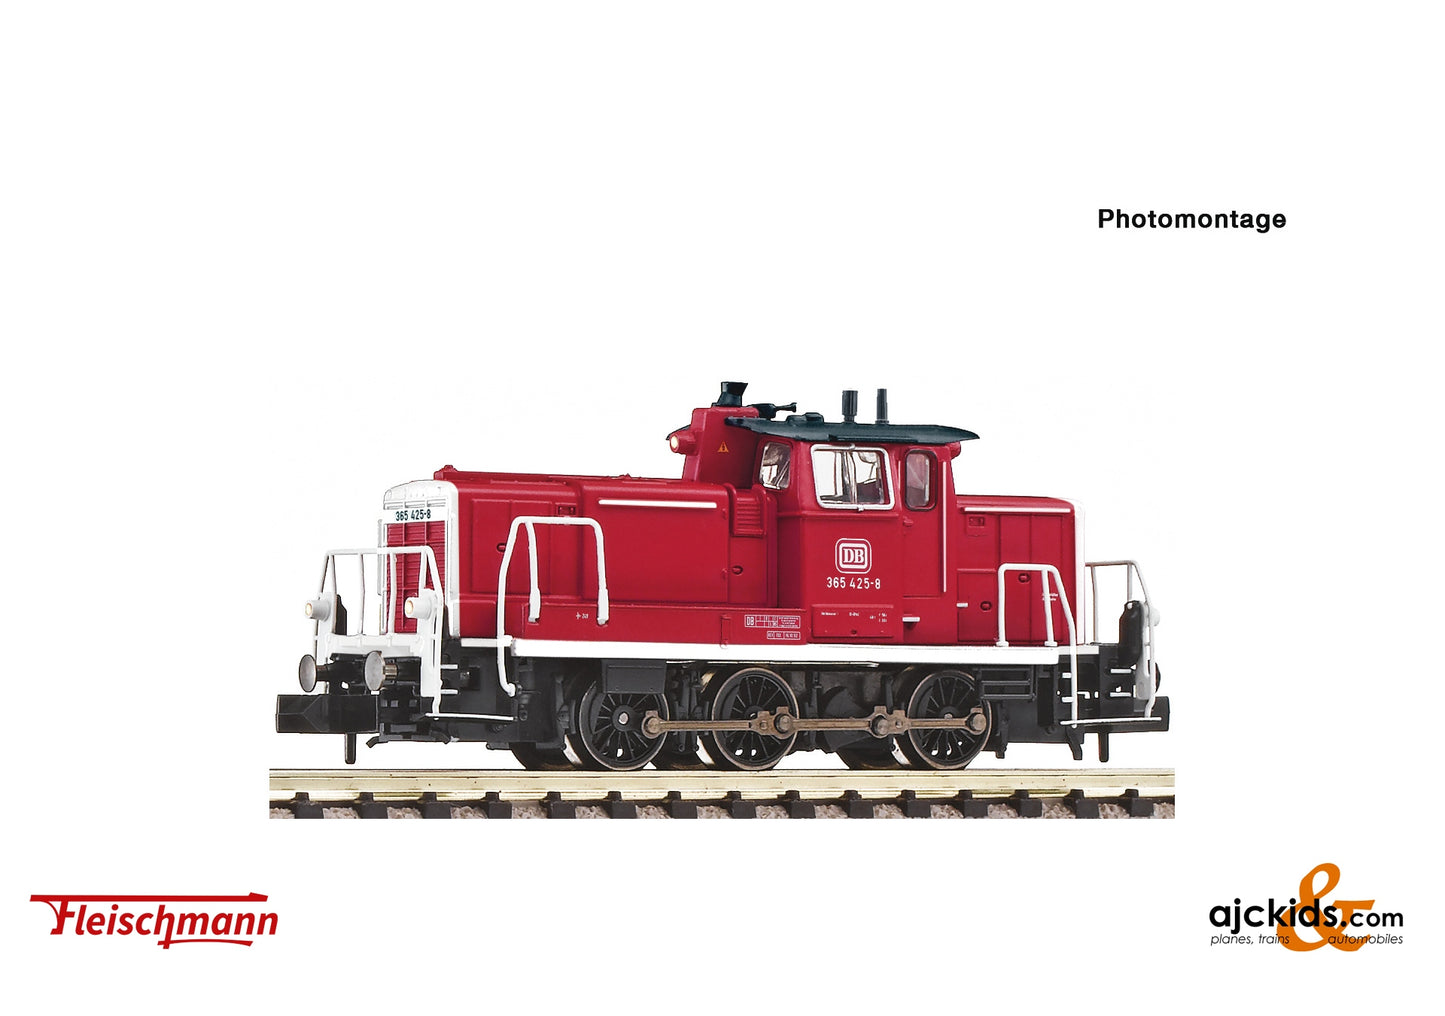 Fleischmann 7370003 - Diesel locomotive 365 425-8, DB at Ajckids.com